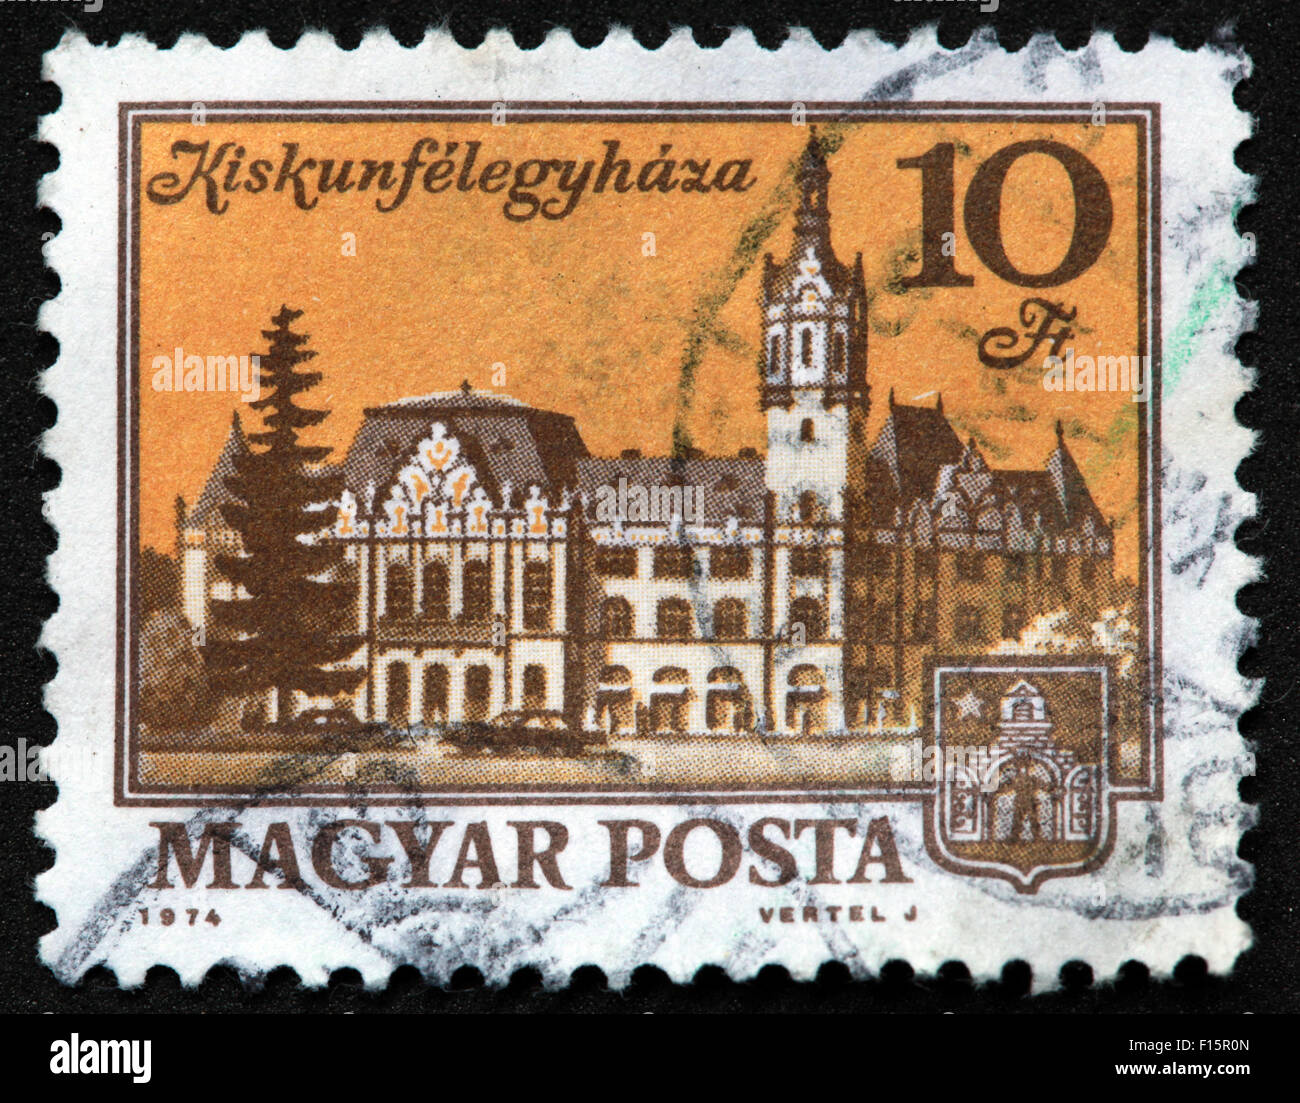 Magyar Posta 1974 Vertel J Kiskunfelegyhaza 10ft maison de château Stamp, Hongrie Banque D'Images